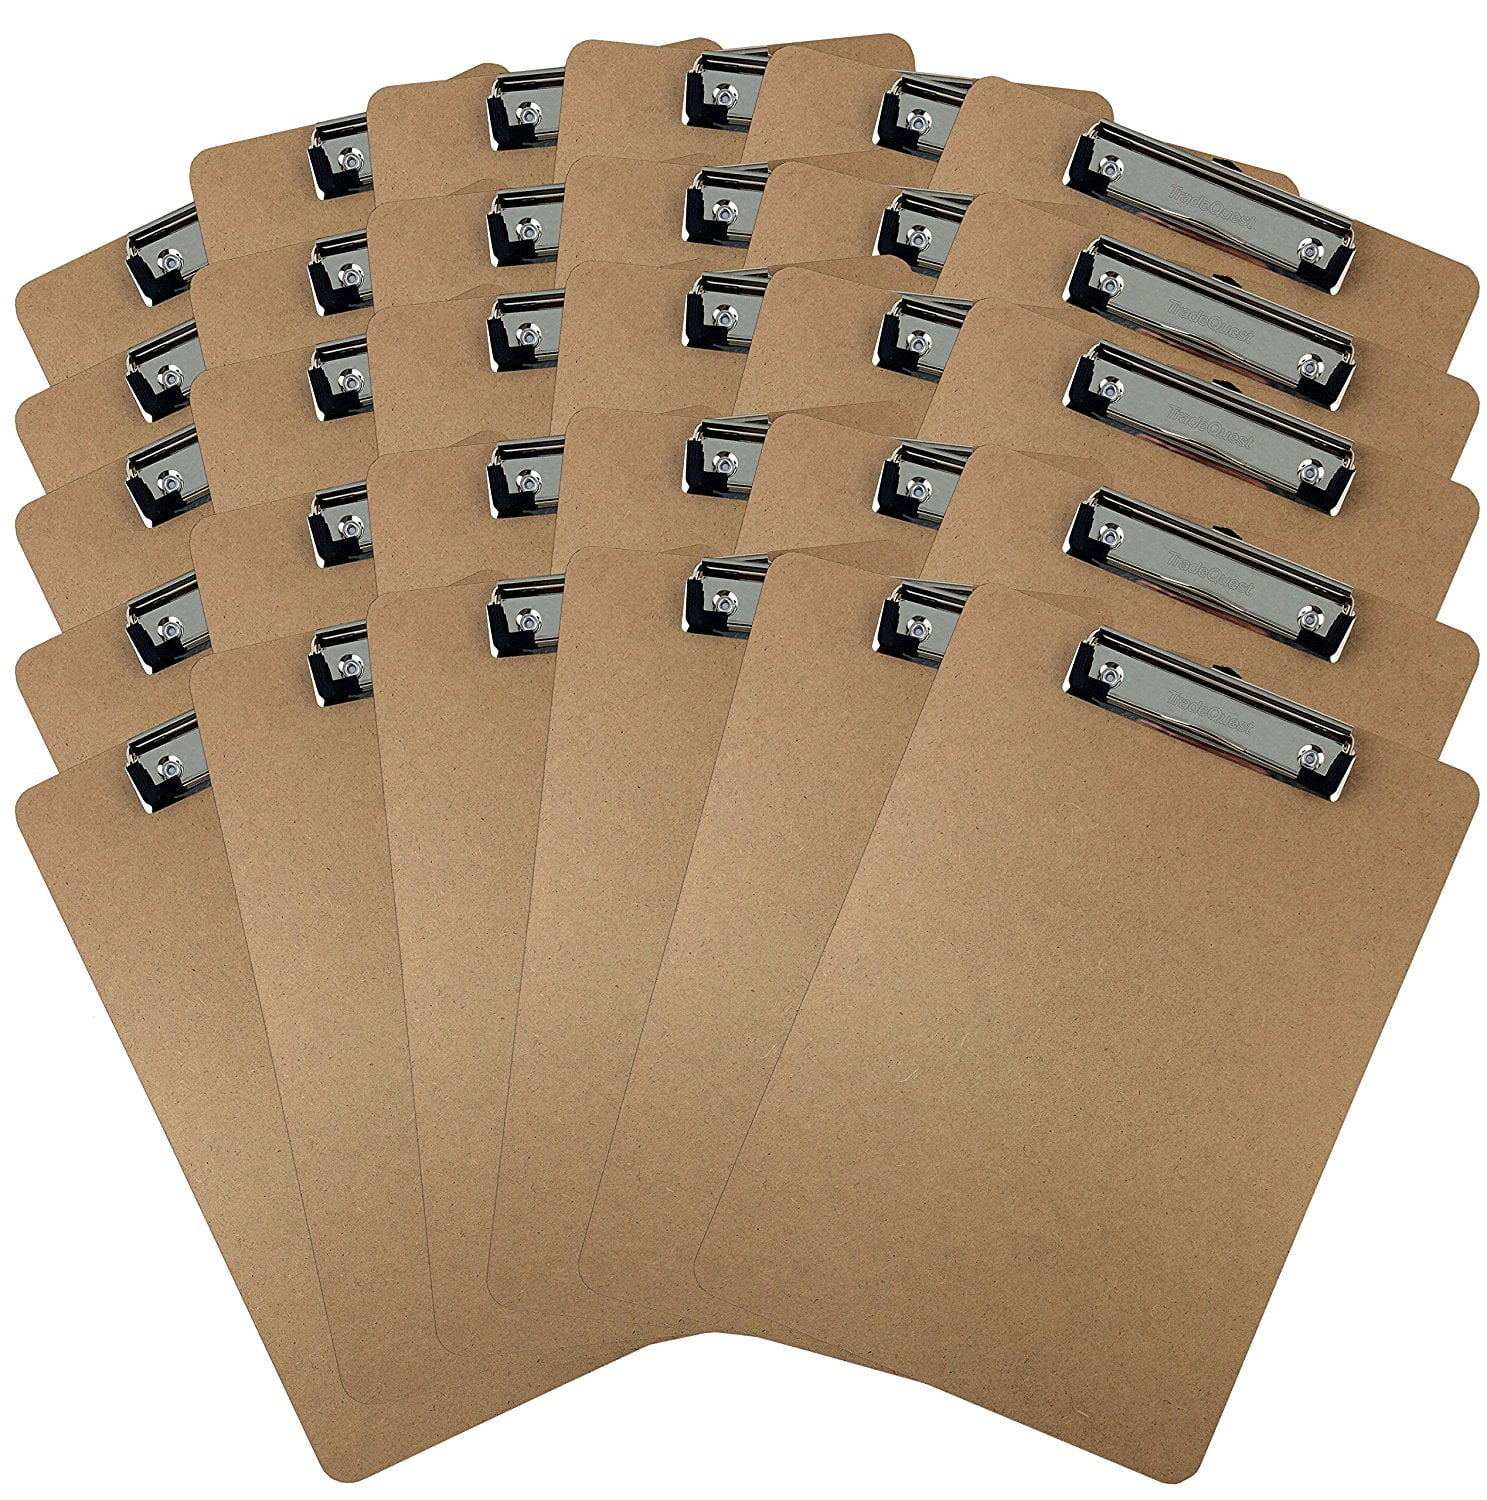 Details about   Trade Quest Plastic Clipboard Transparent Color Letter Size Standard Clip Pack 